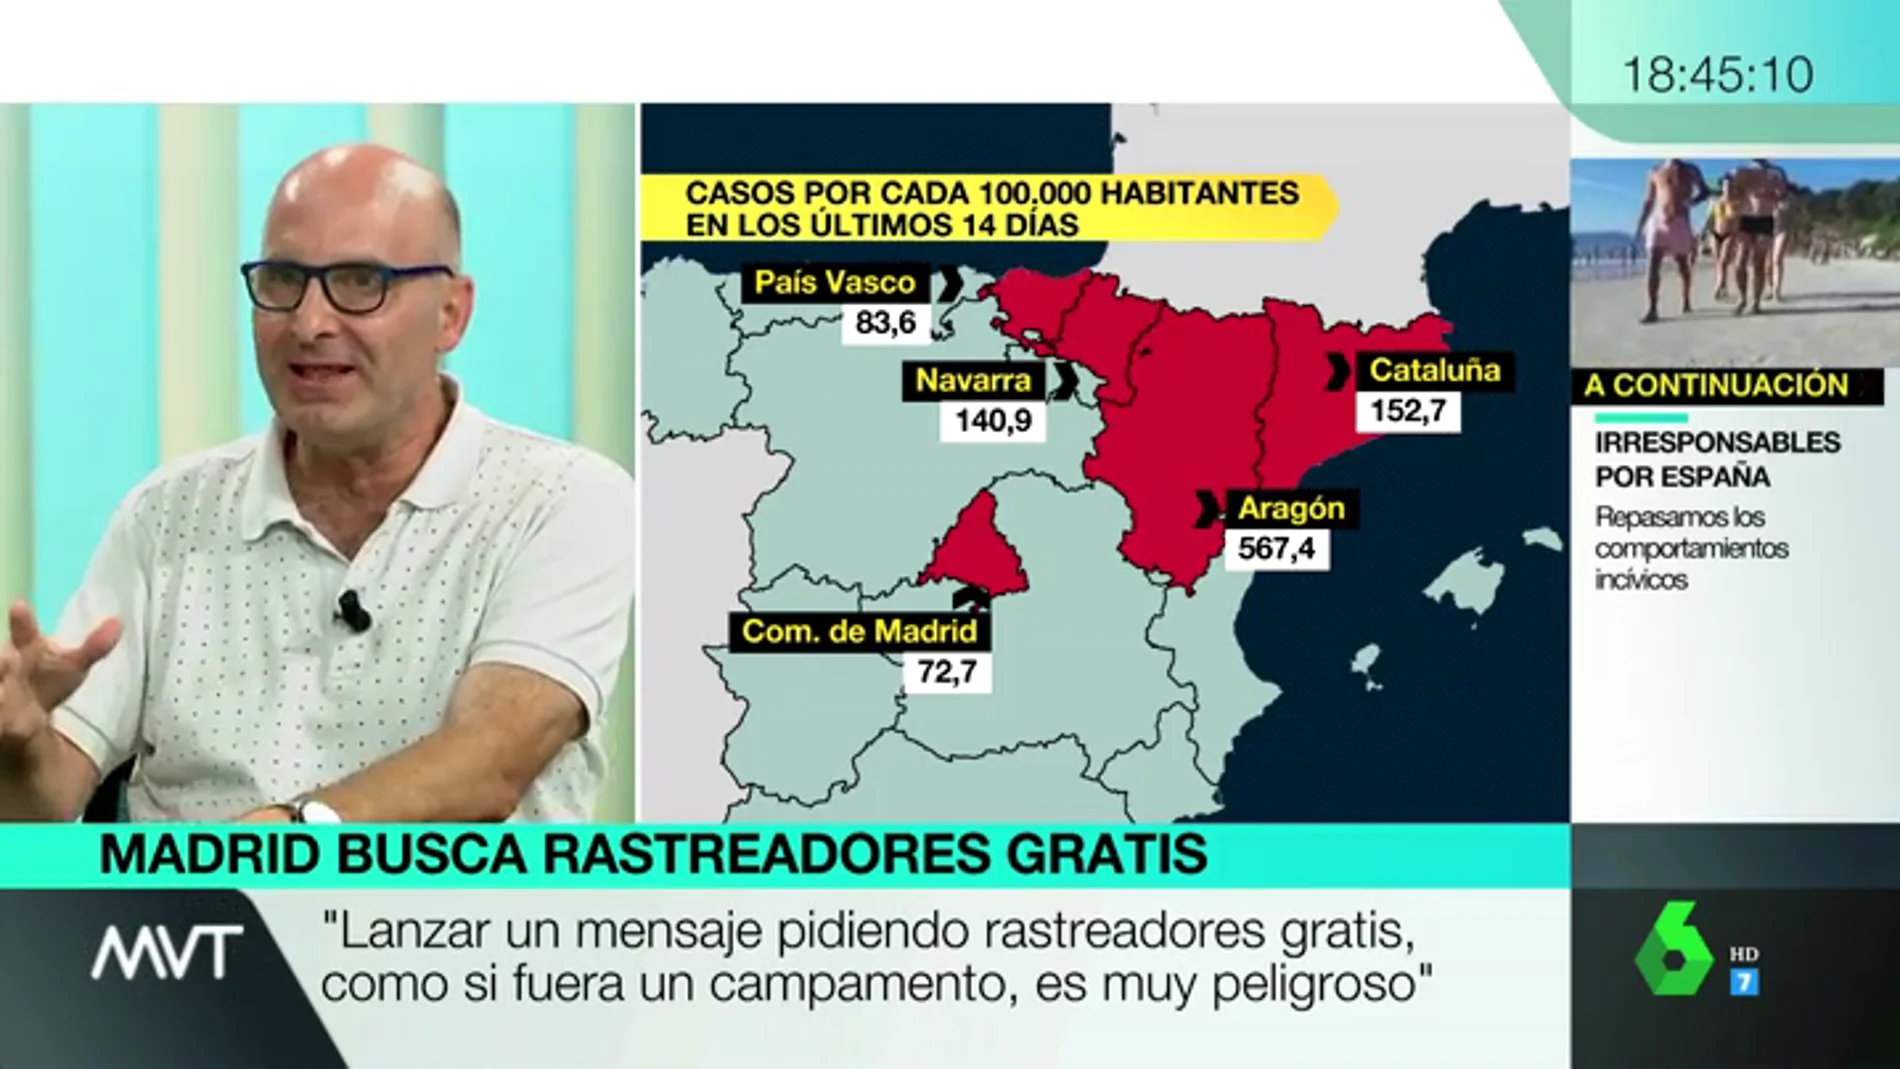 El doctor López Guerrero alerta: "El virus no se va a ir en septiembre. Viene un otro complicado"